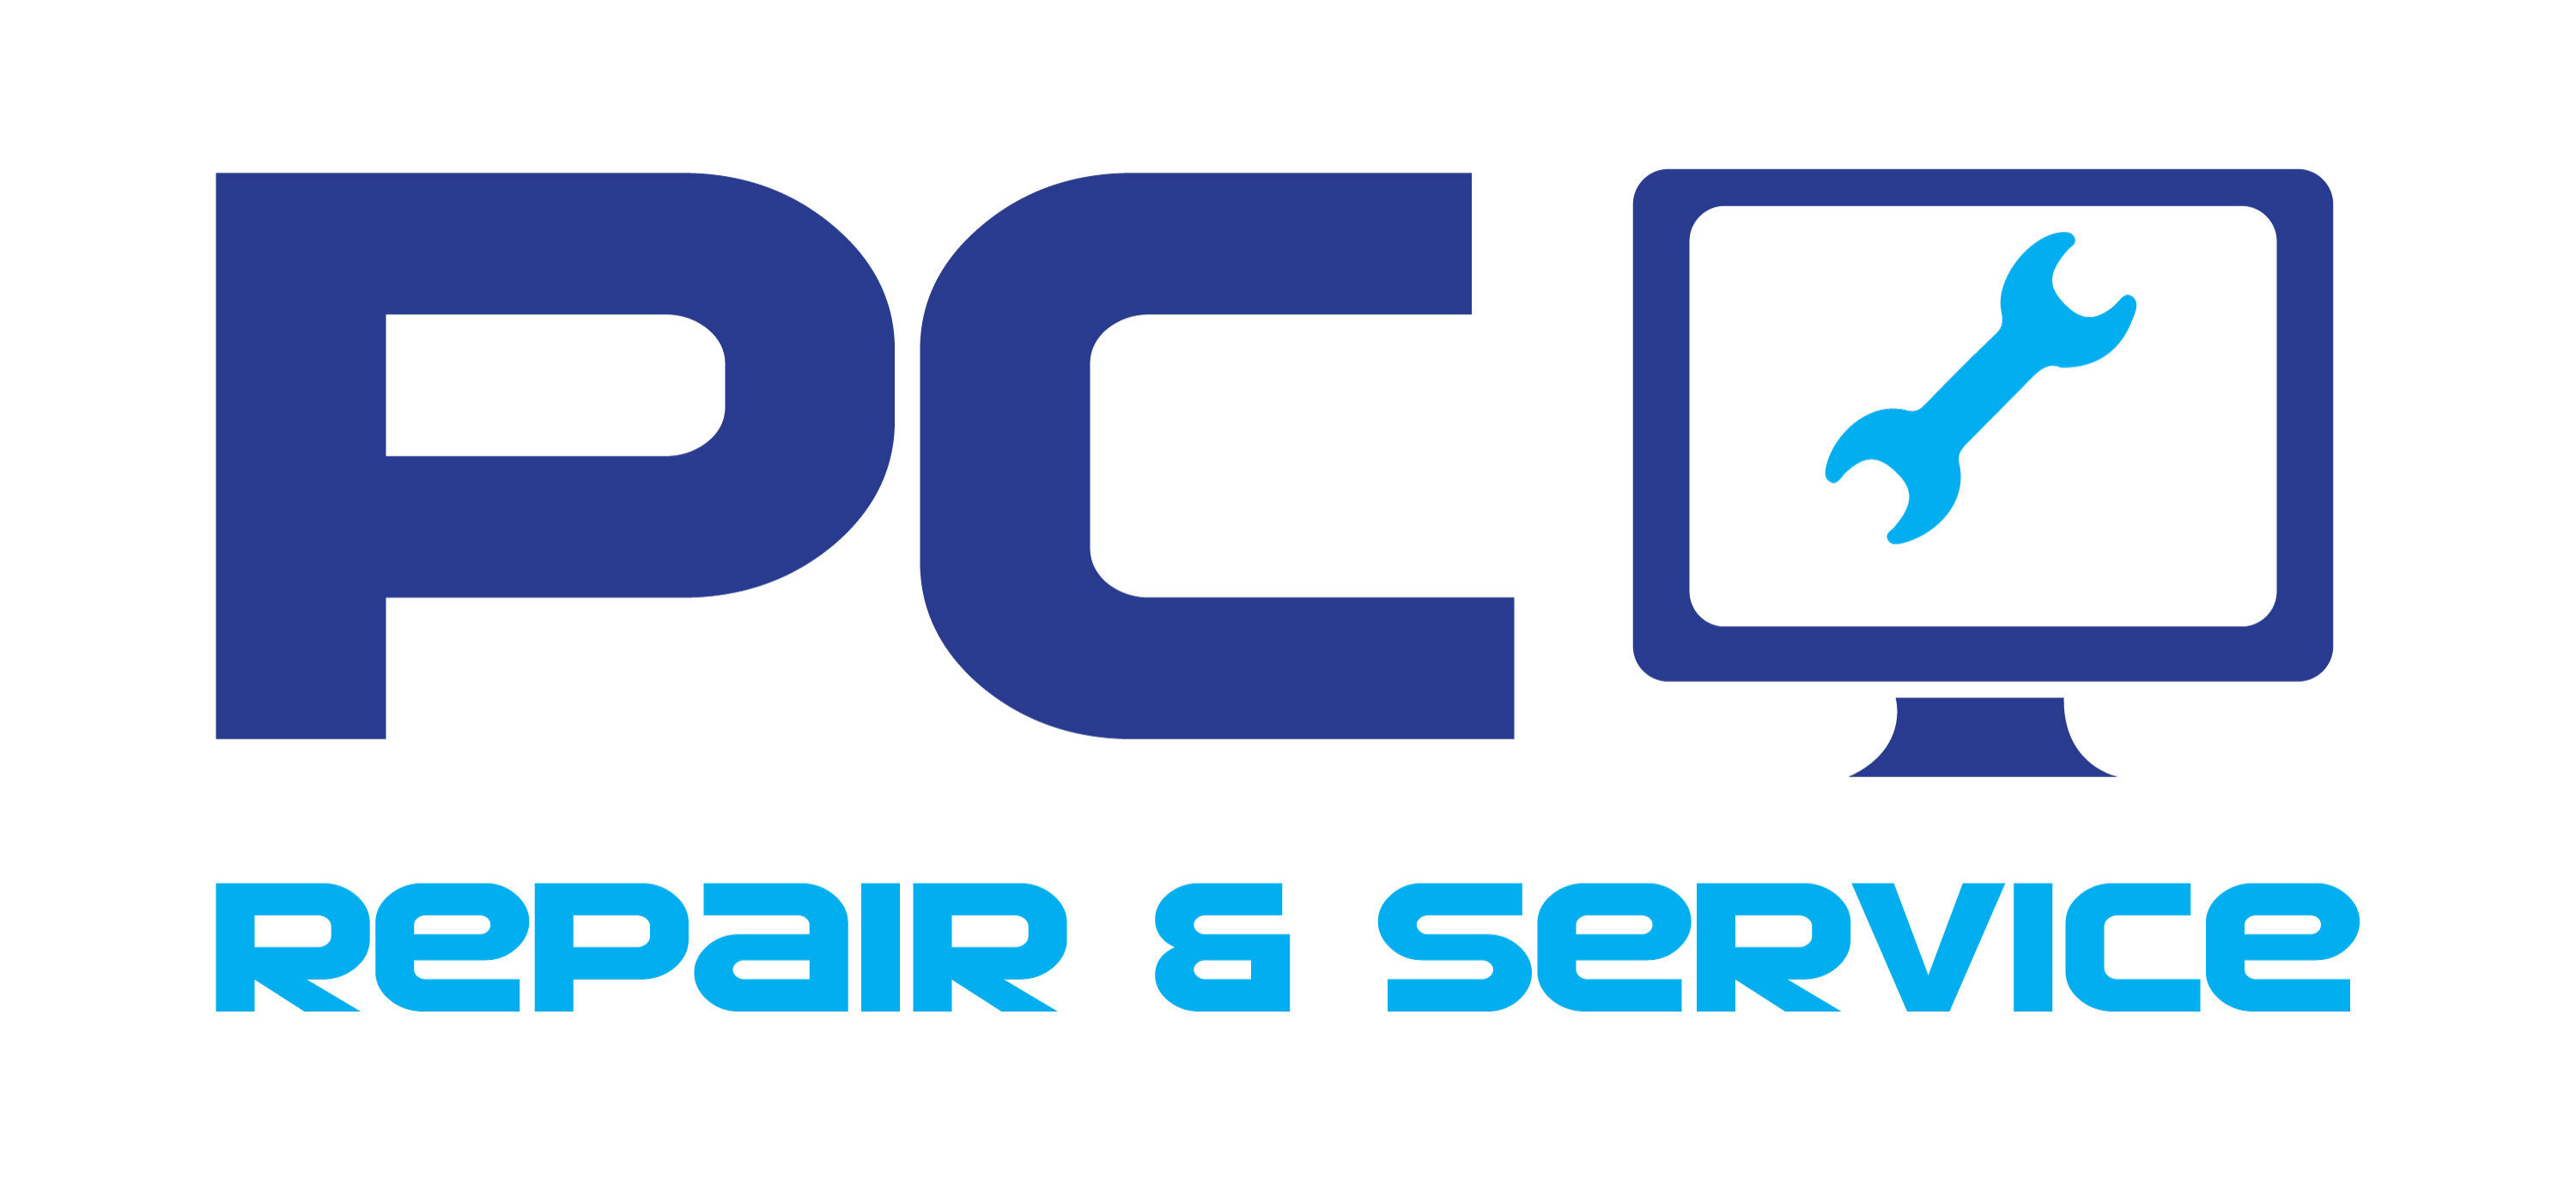 PC Repair & Service